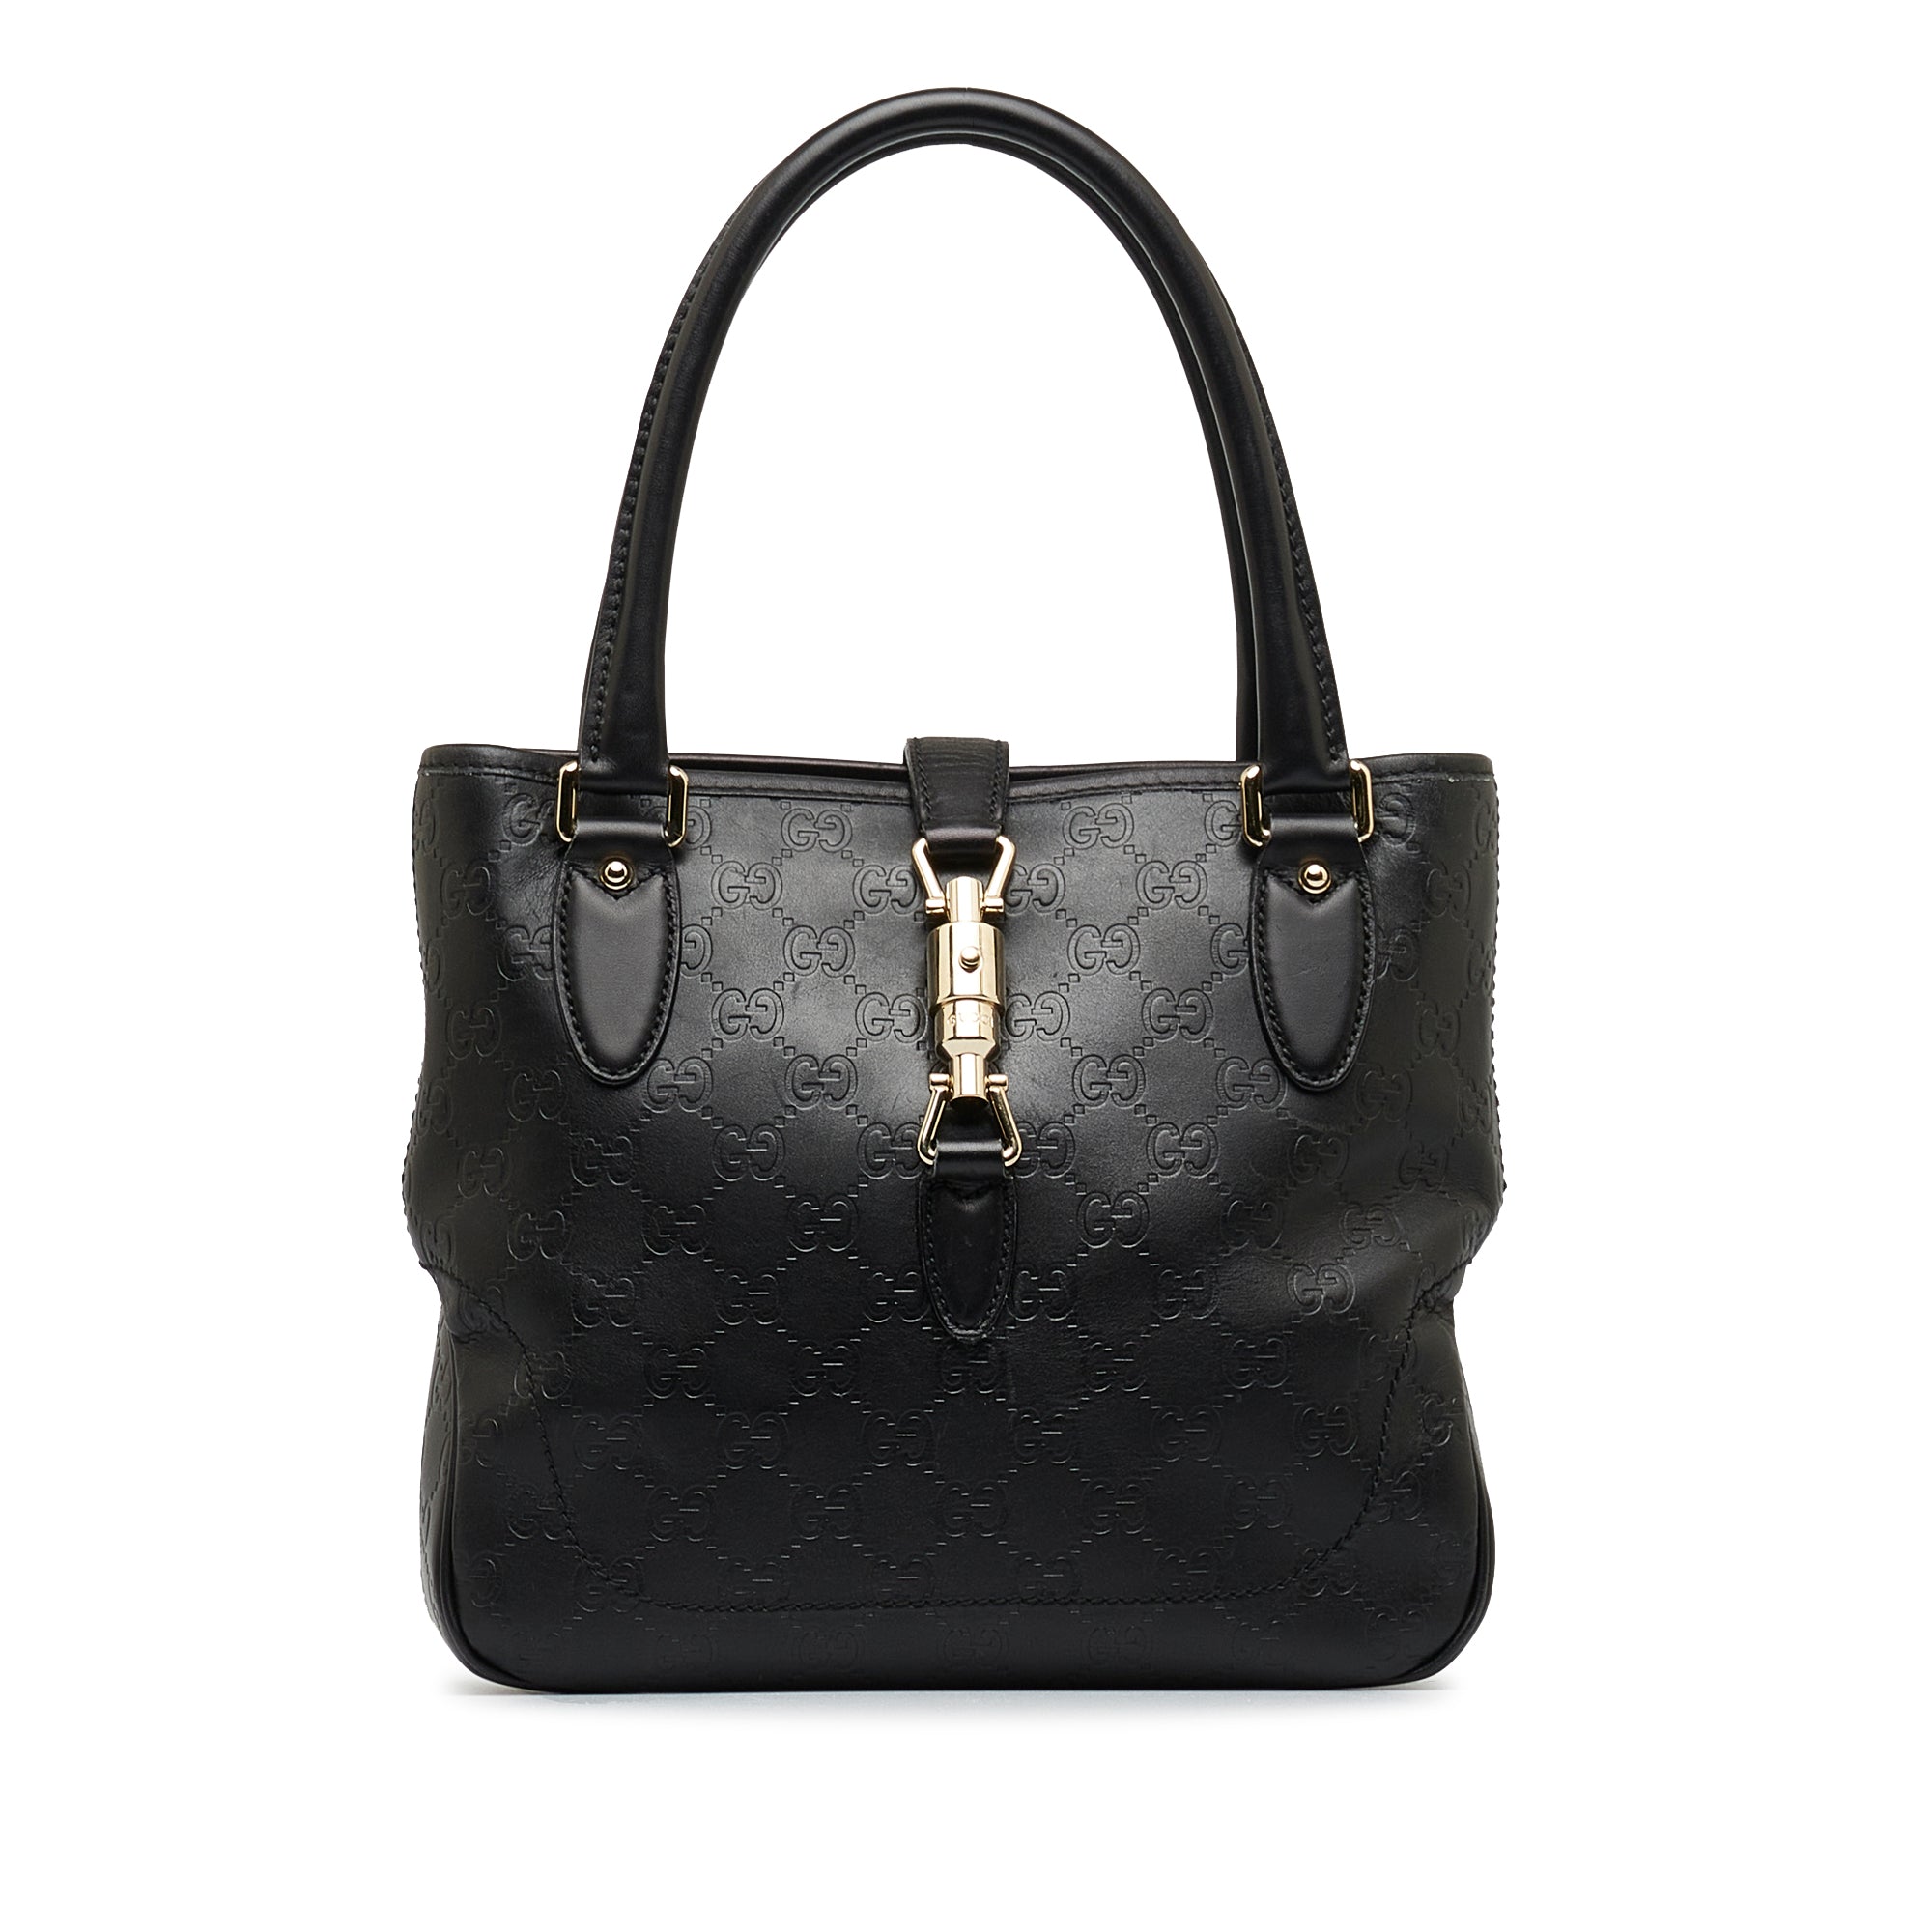 Zac Posen Authenticated Leather Handbag